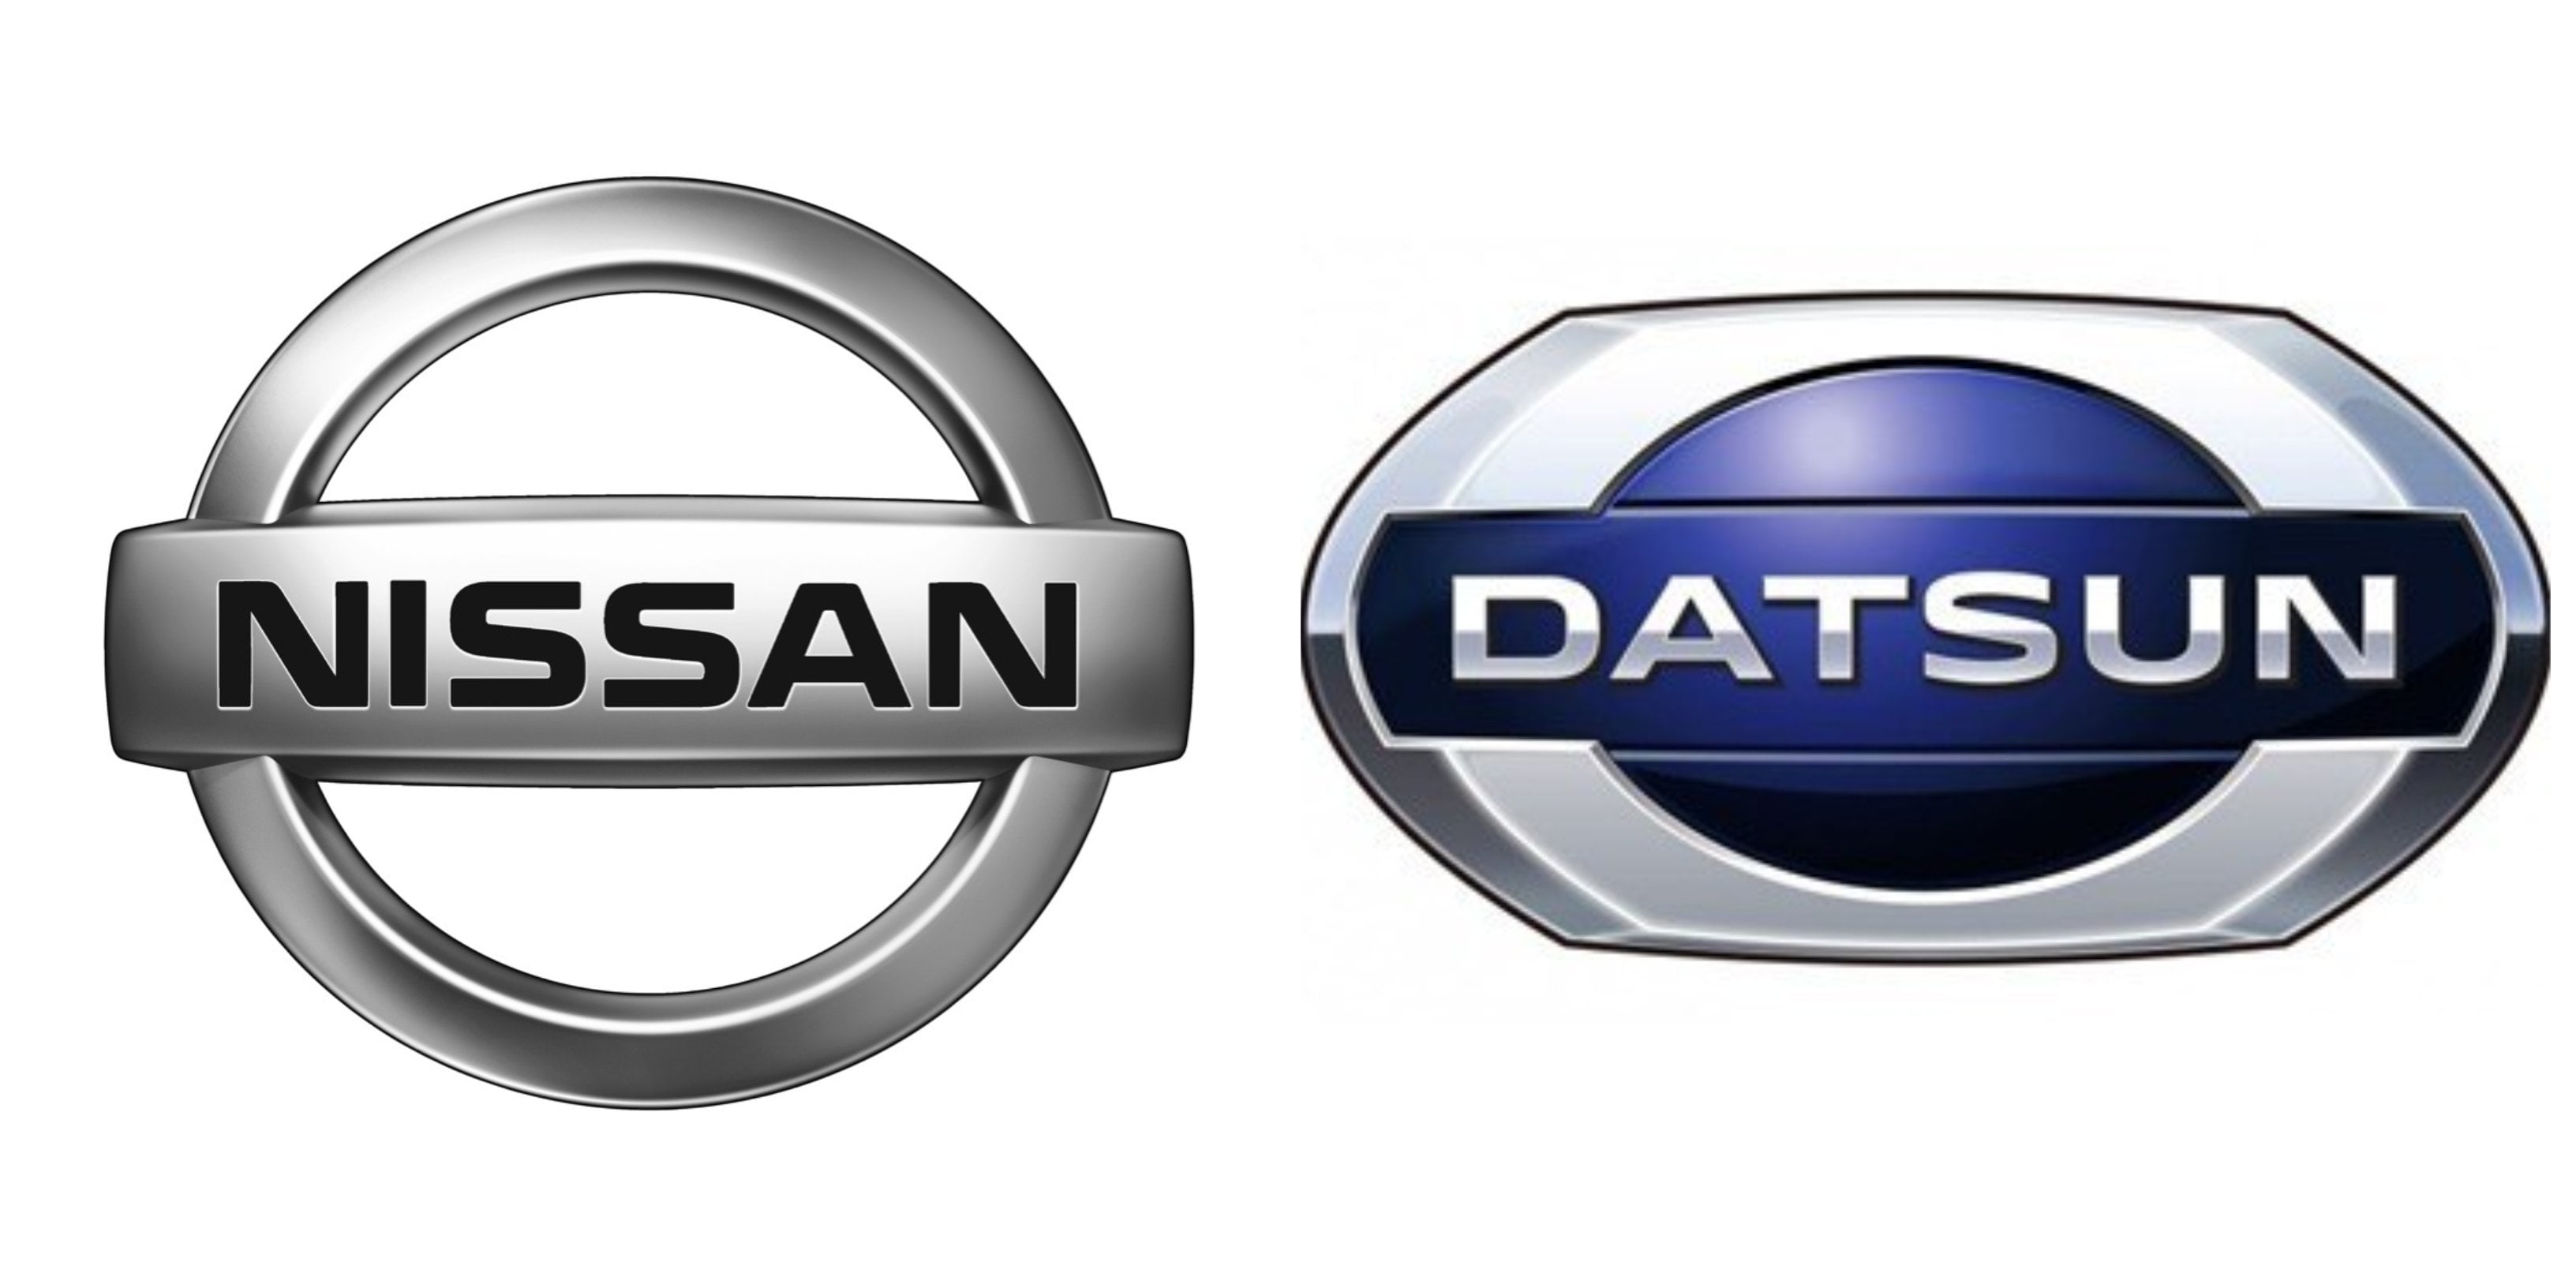 Nissan drops Datsun